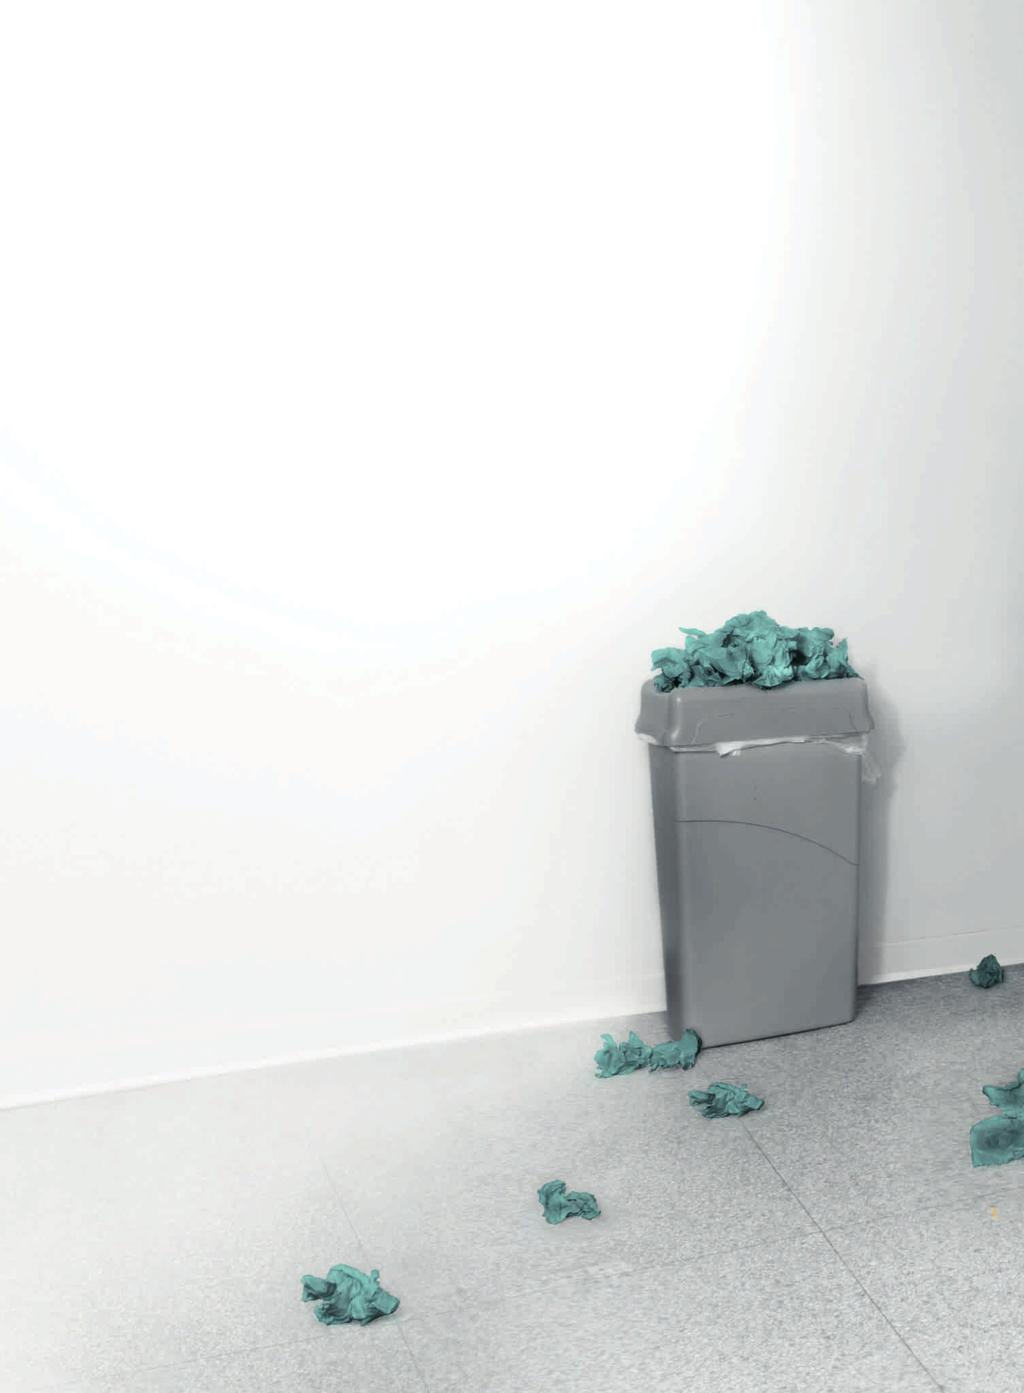 03 04 Paperipyyhkeiden ongelmat Jotkin paperipyyhkeet voivat olla haitallisia ympäristölle. Ne myös lisäävät WC-tilojen huoltotarvetta roskien ja tukosten vuoksi.